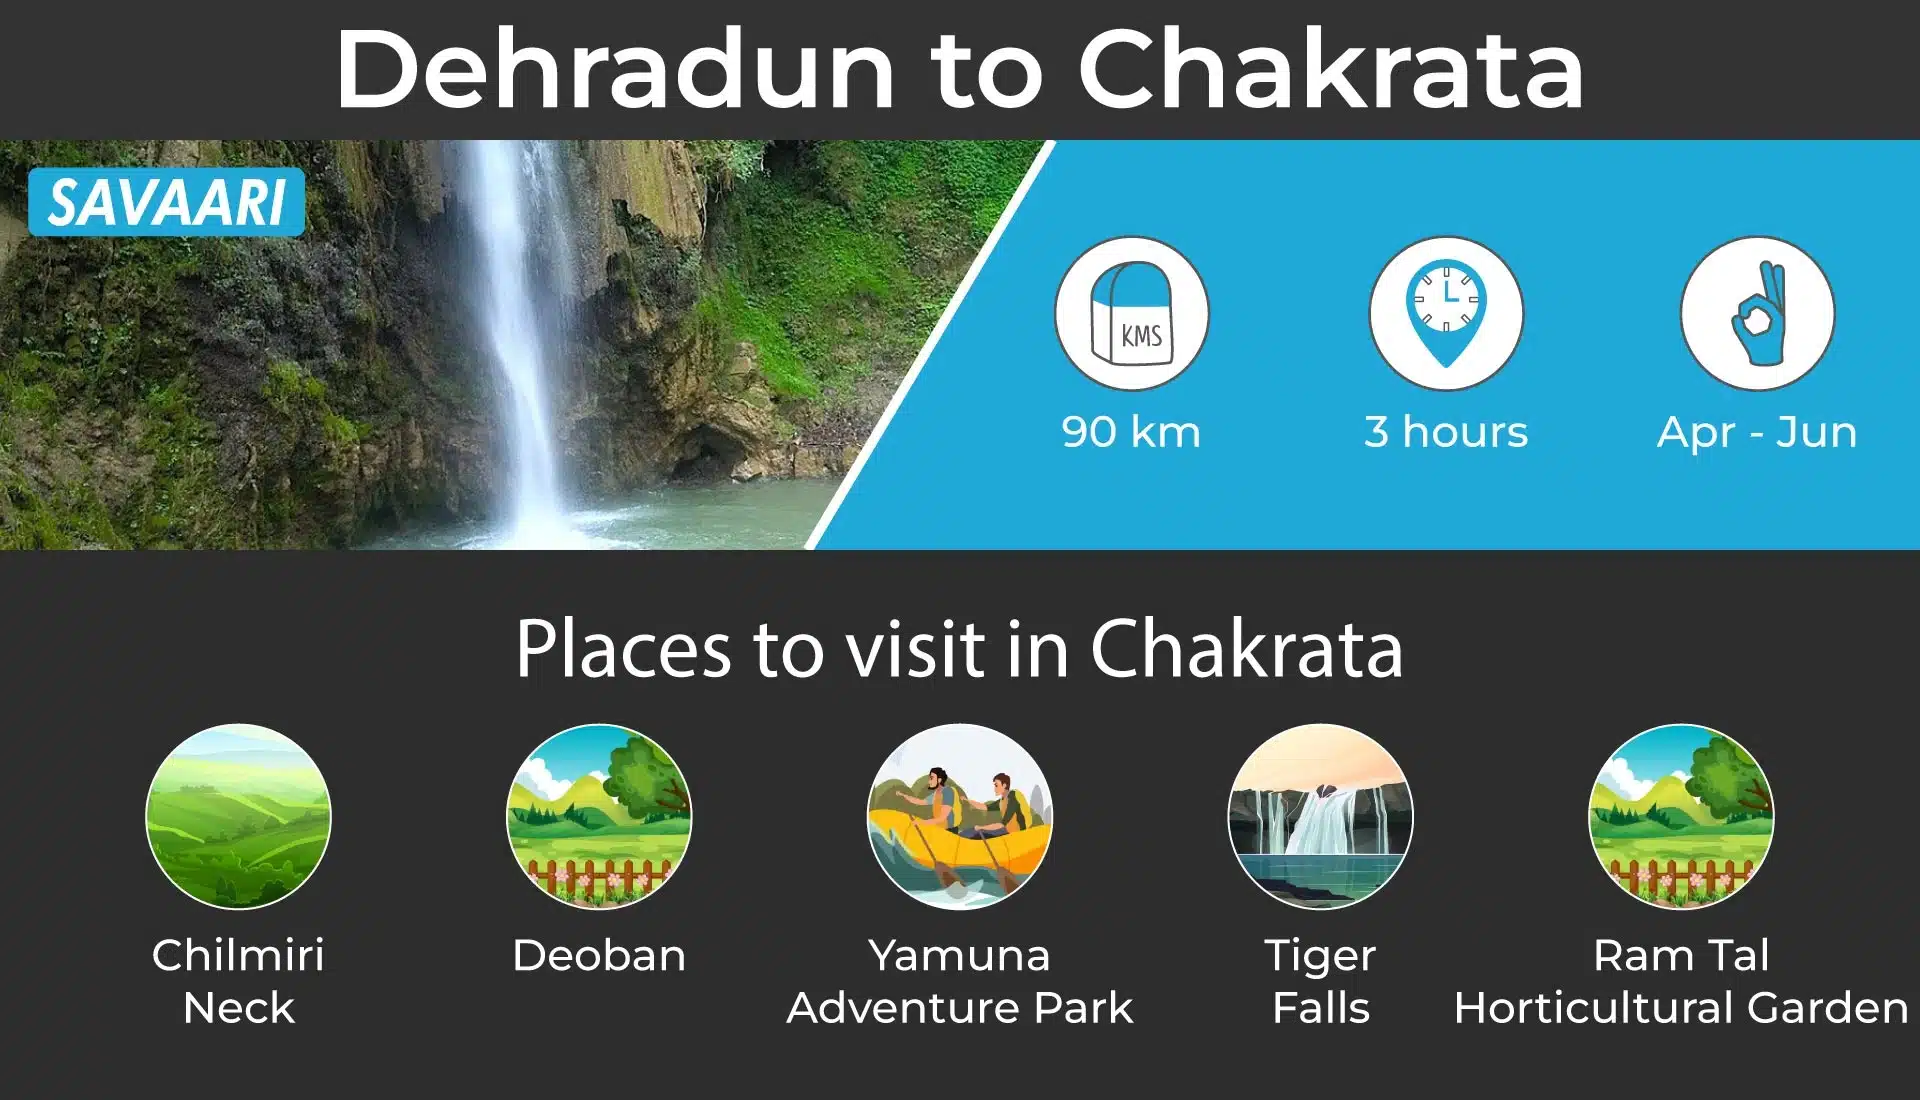 Dehradun to Chakrata